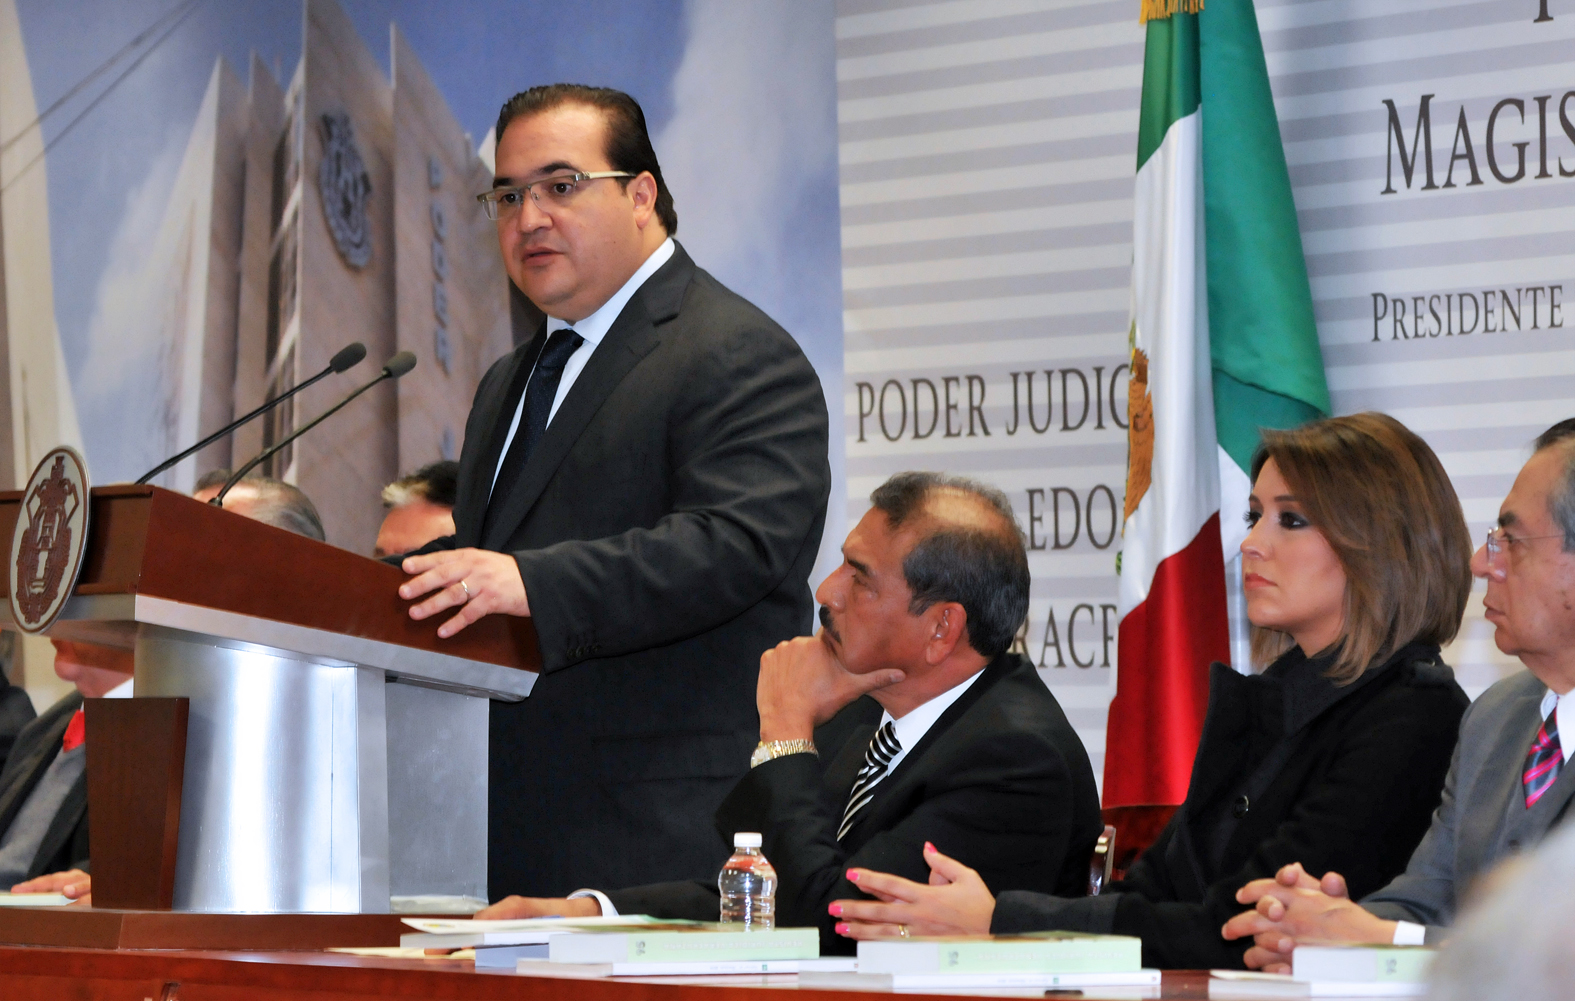 Veracruz, con la oportunidad histórica de fundar una sociedad más justa: Javier Duarte